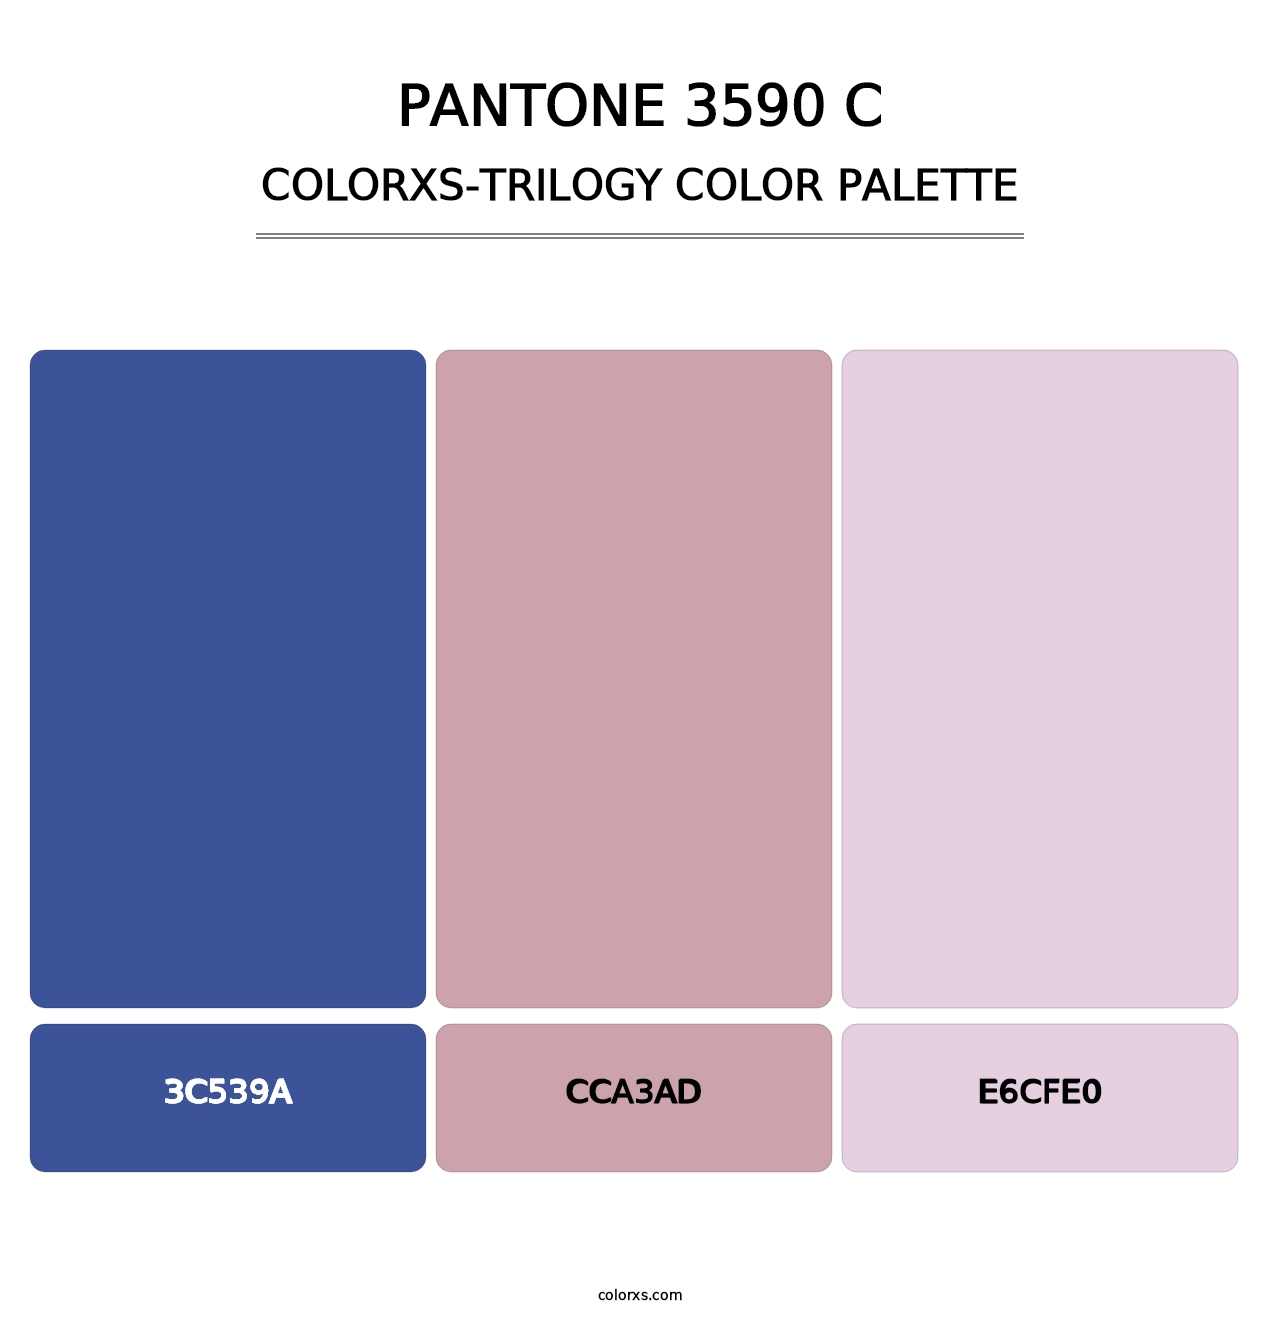 PANTONE 3590 C - Colorxs Trilogy Palette